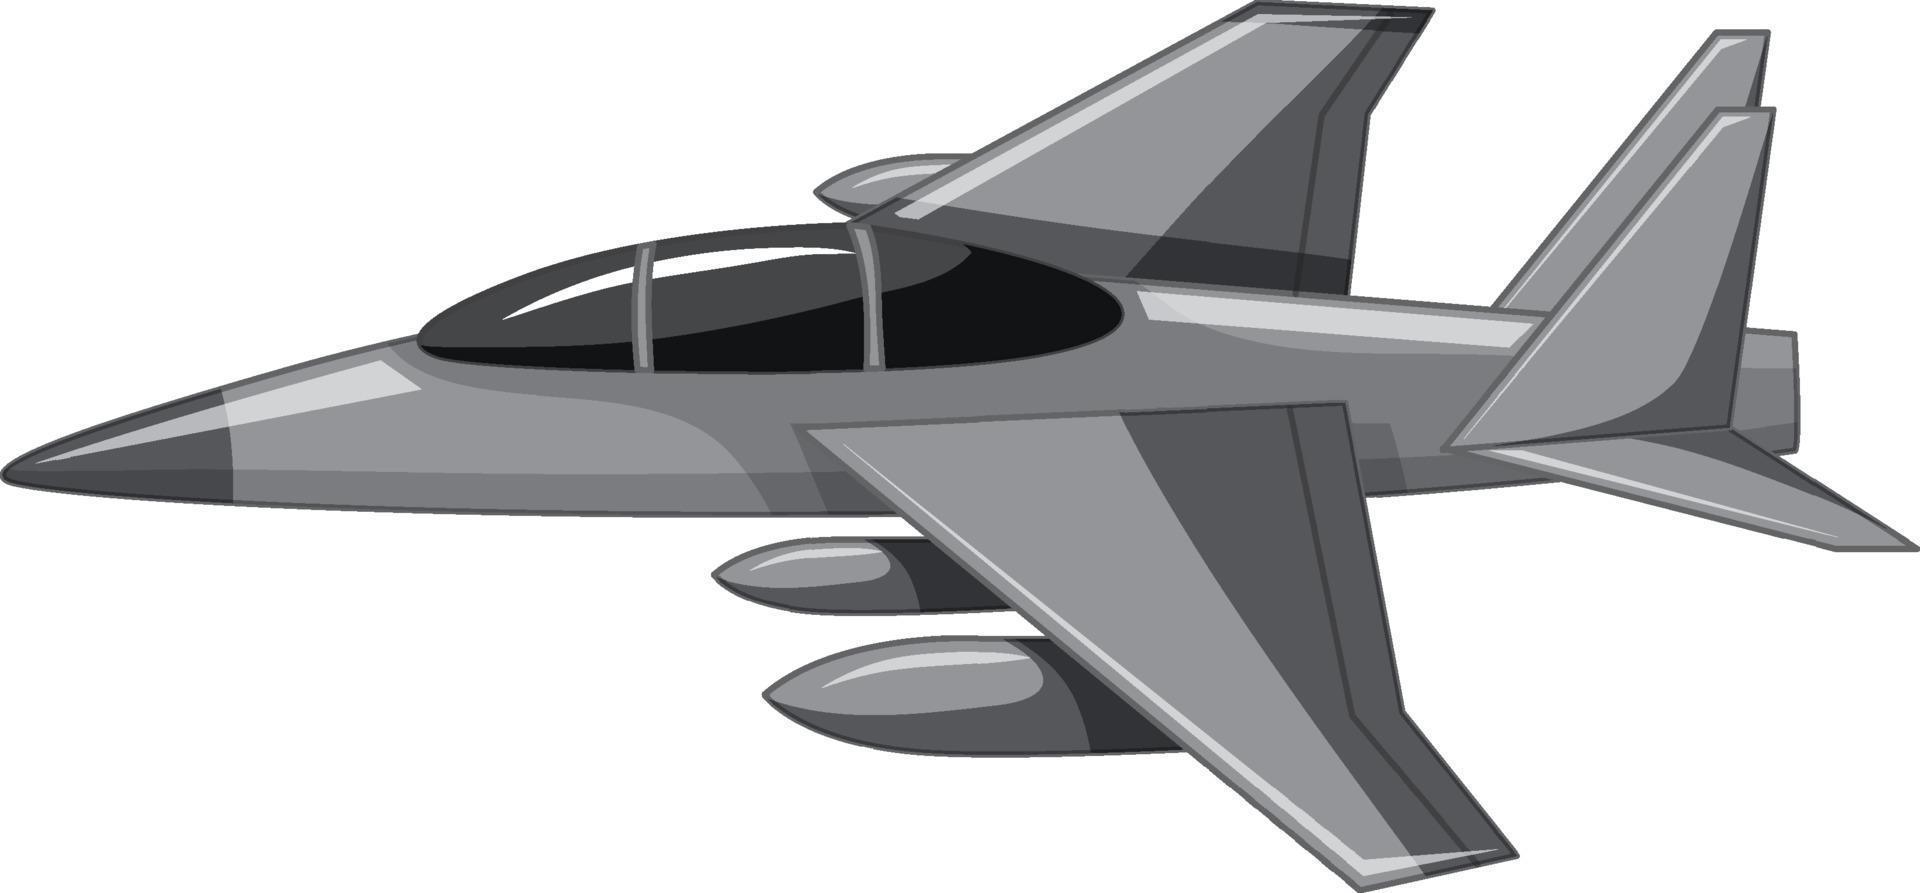 un jet da combattimento o un aereo militare isolato su sfondo bianco vettore